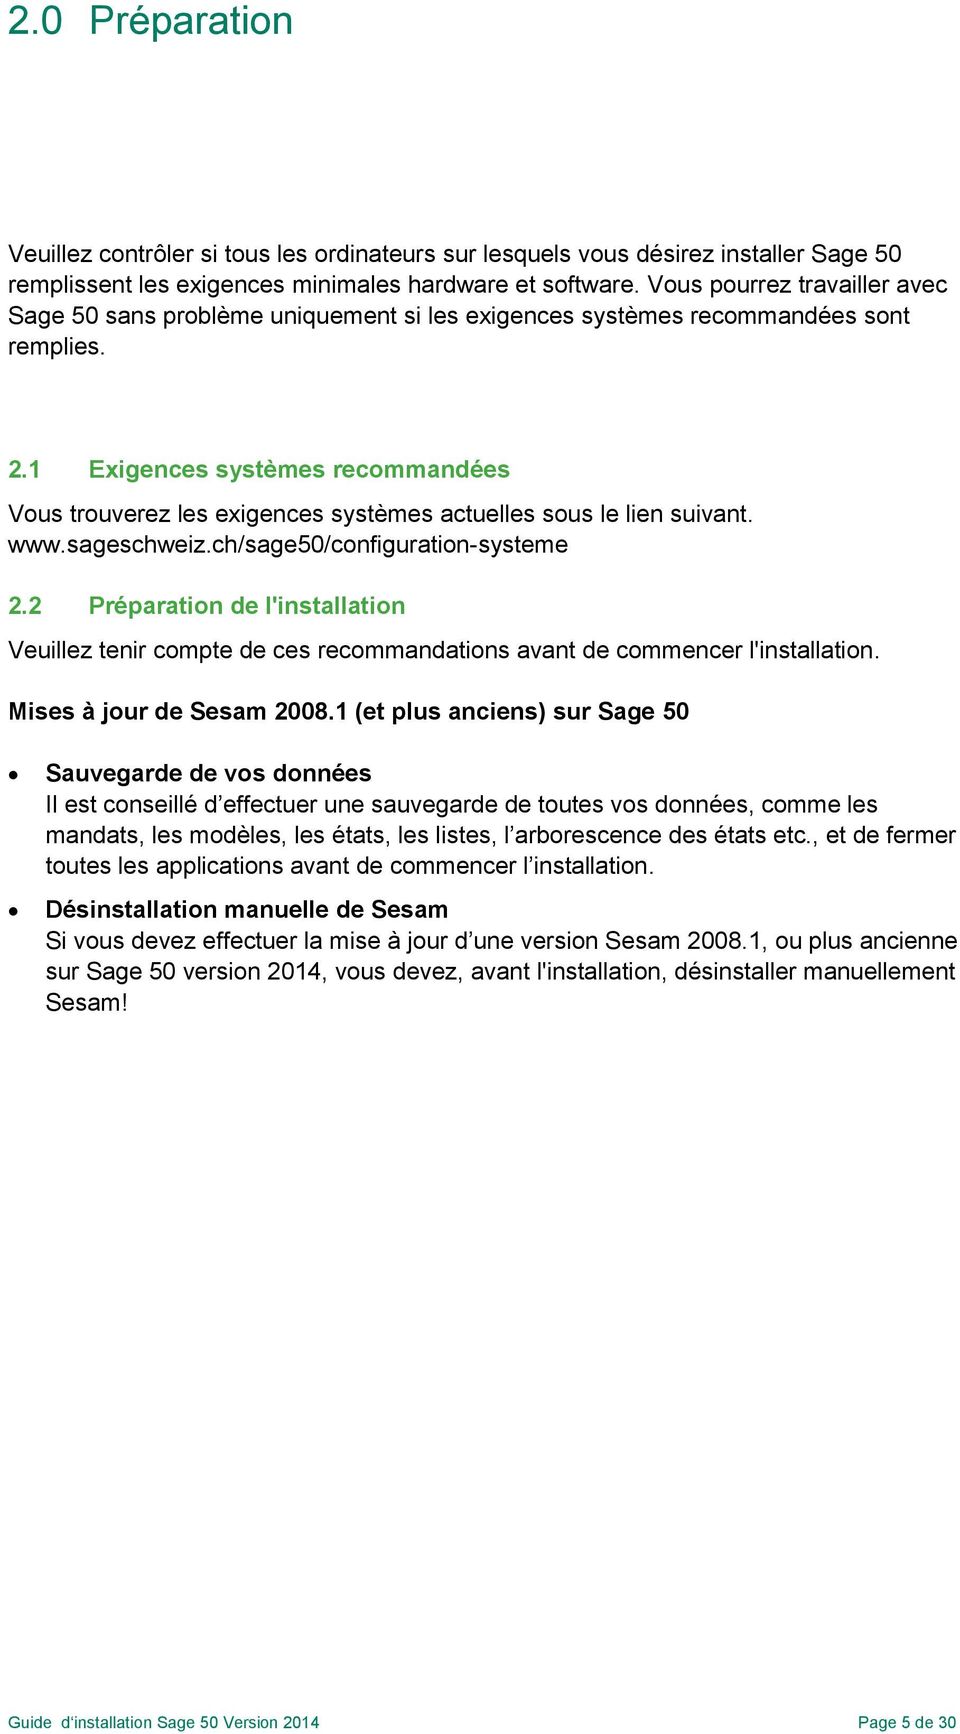 1 Exigences systèmes recommandées Vous trouverez les exigences systèmes actuelles sous le lien suivant. www.sageschweiz.ch/sage50/configuration-systeme 2.